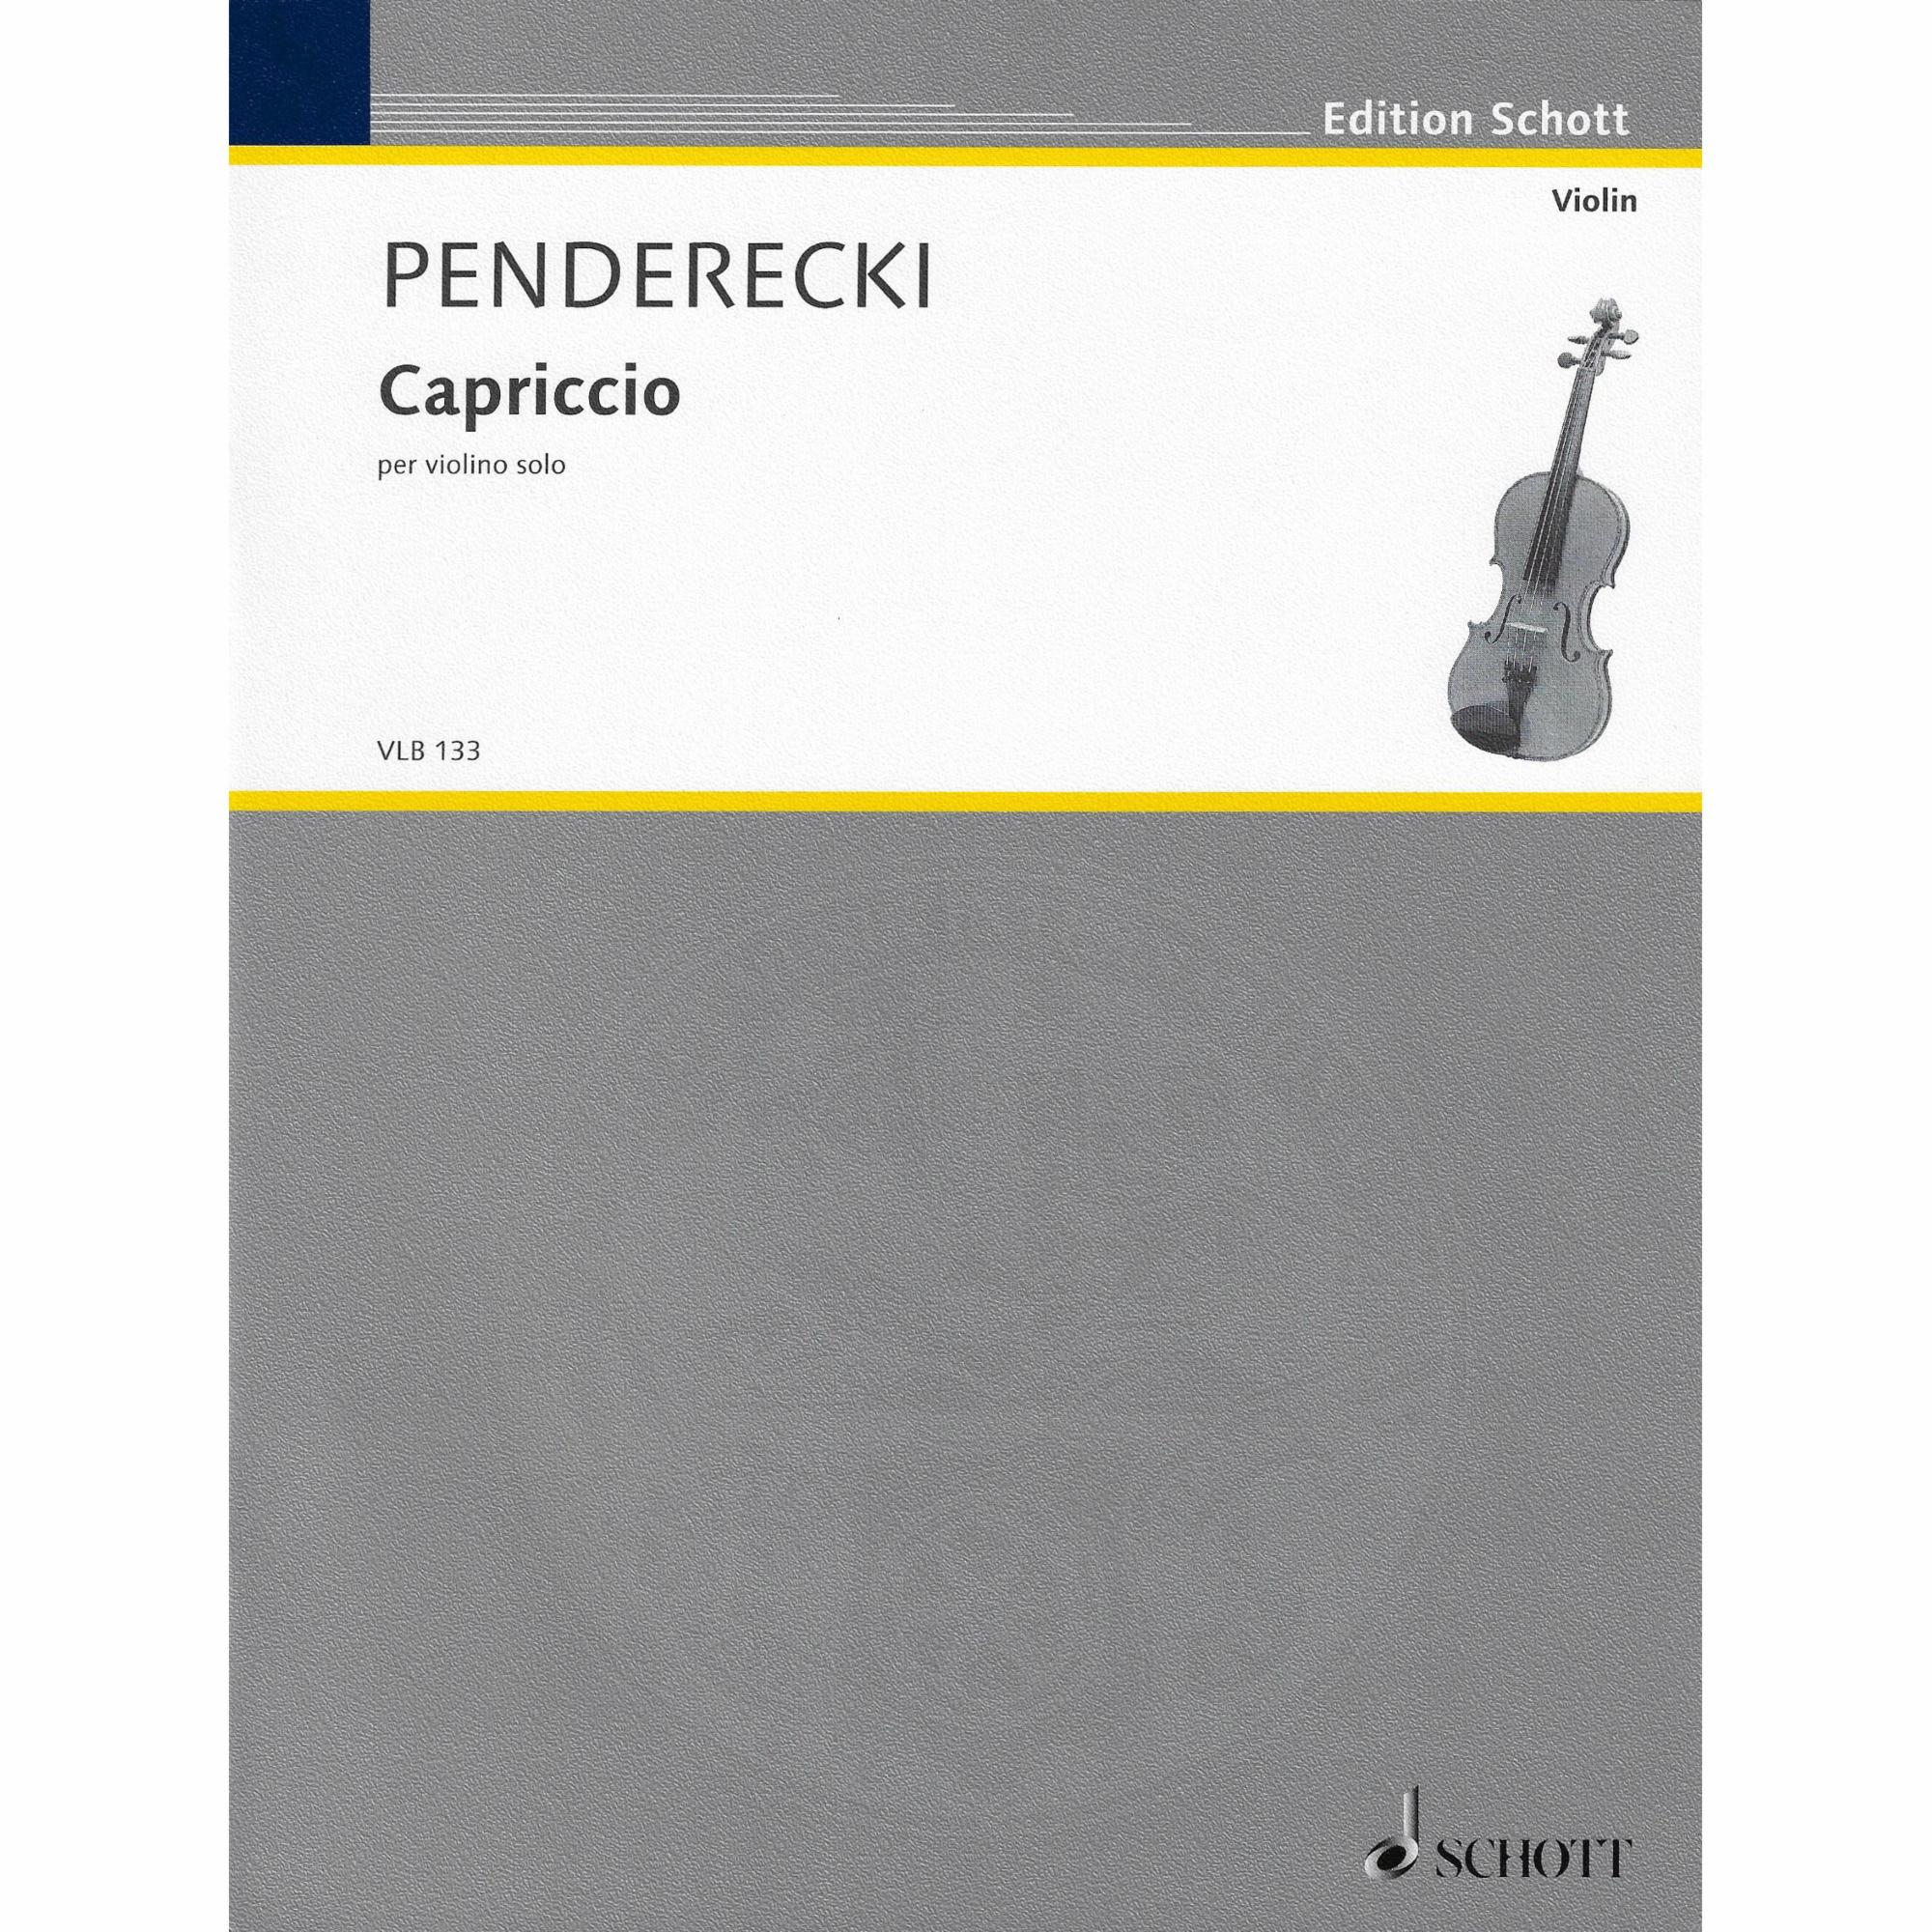 Penderecki -- Capriccio for Solo Violin